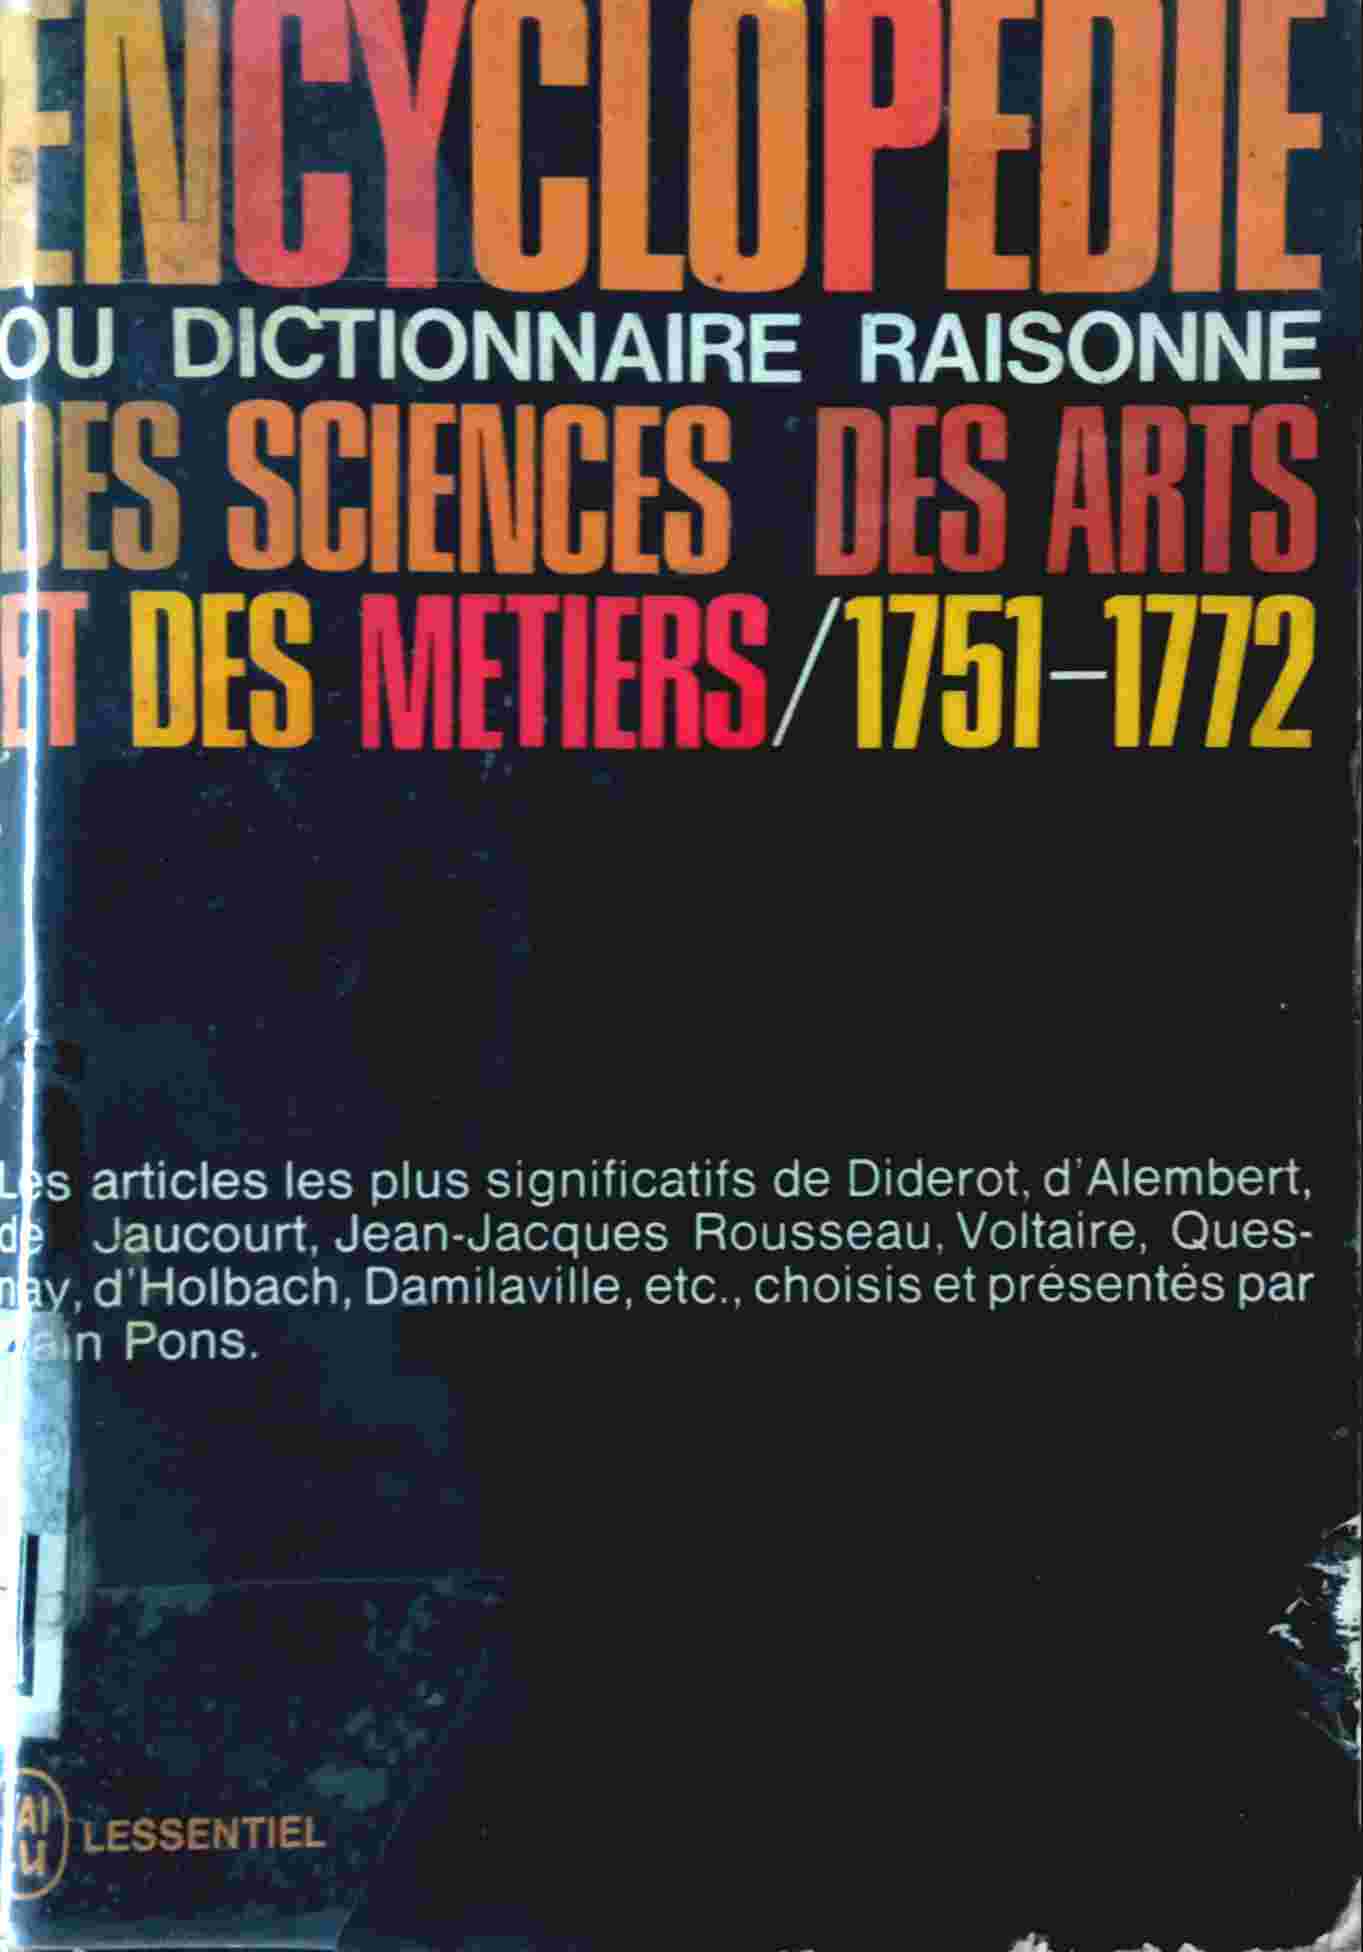 ENCYCLOPÉDIE OU DICTIONNAIRE RAISONNÉ DES SCIENCES, DES ARTS ET DES MÉTIERS 1751-1772